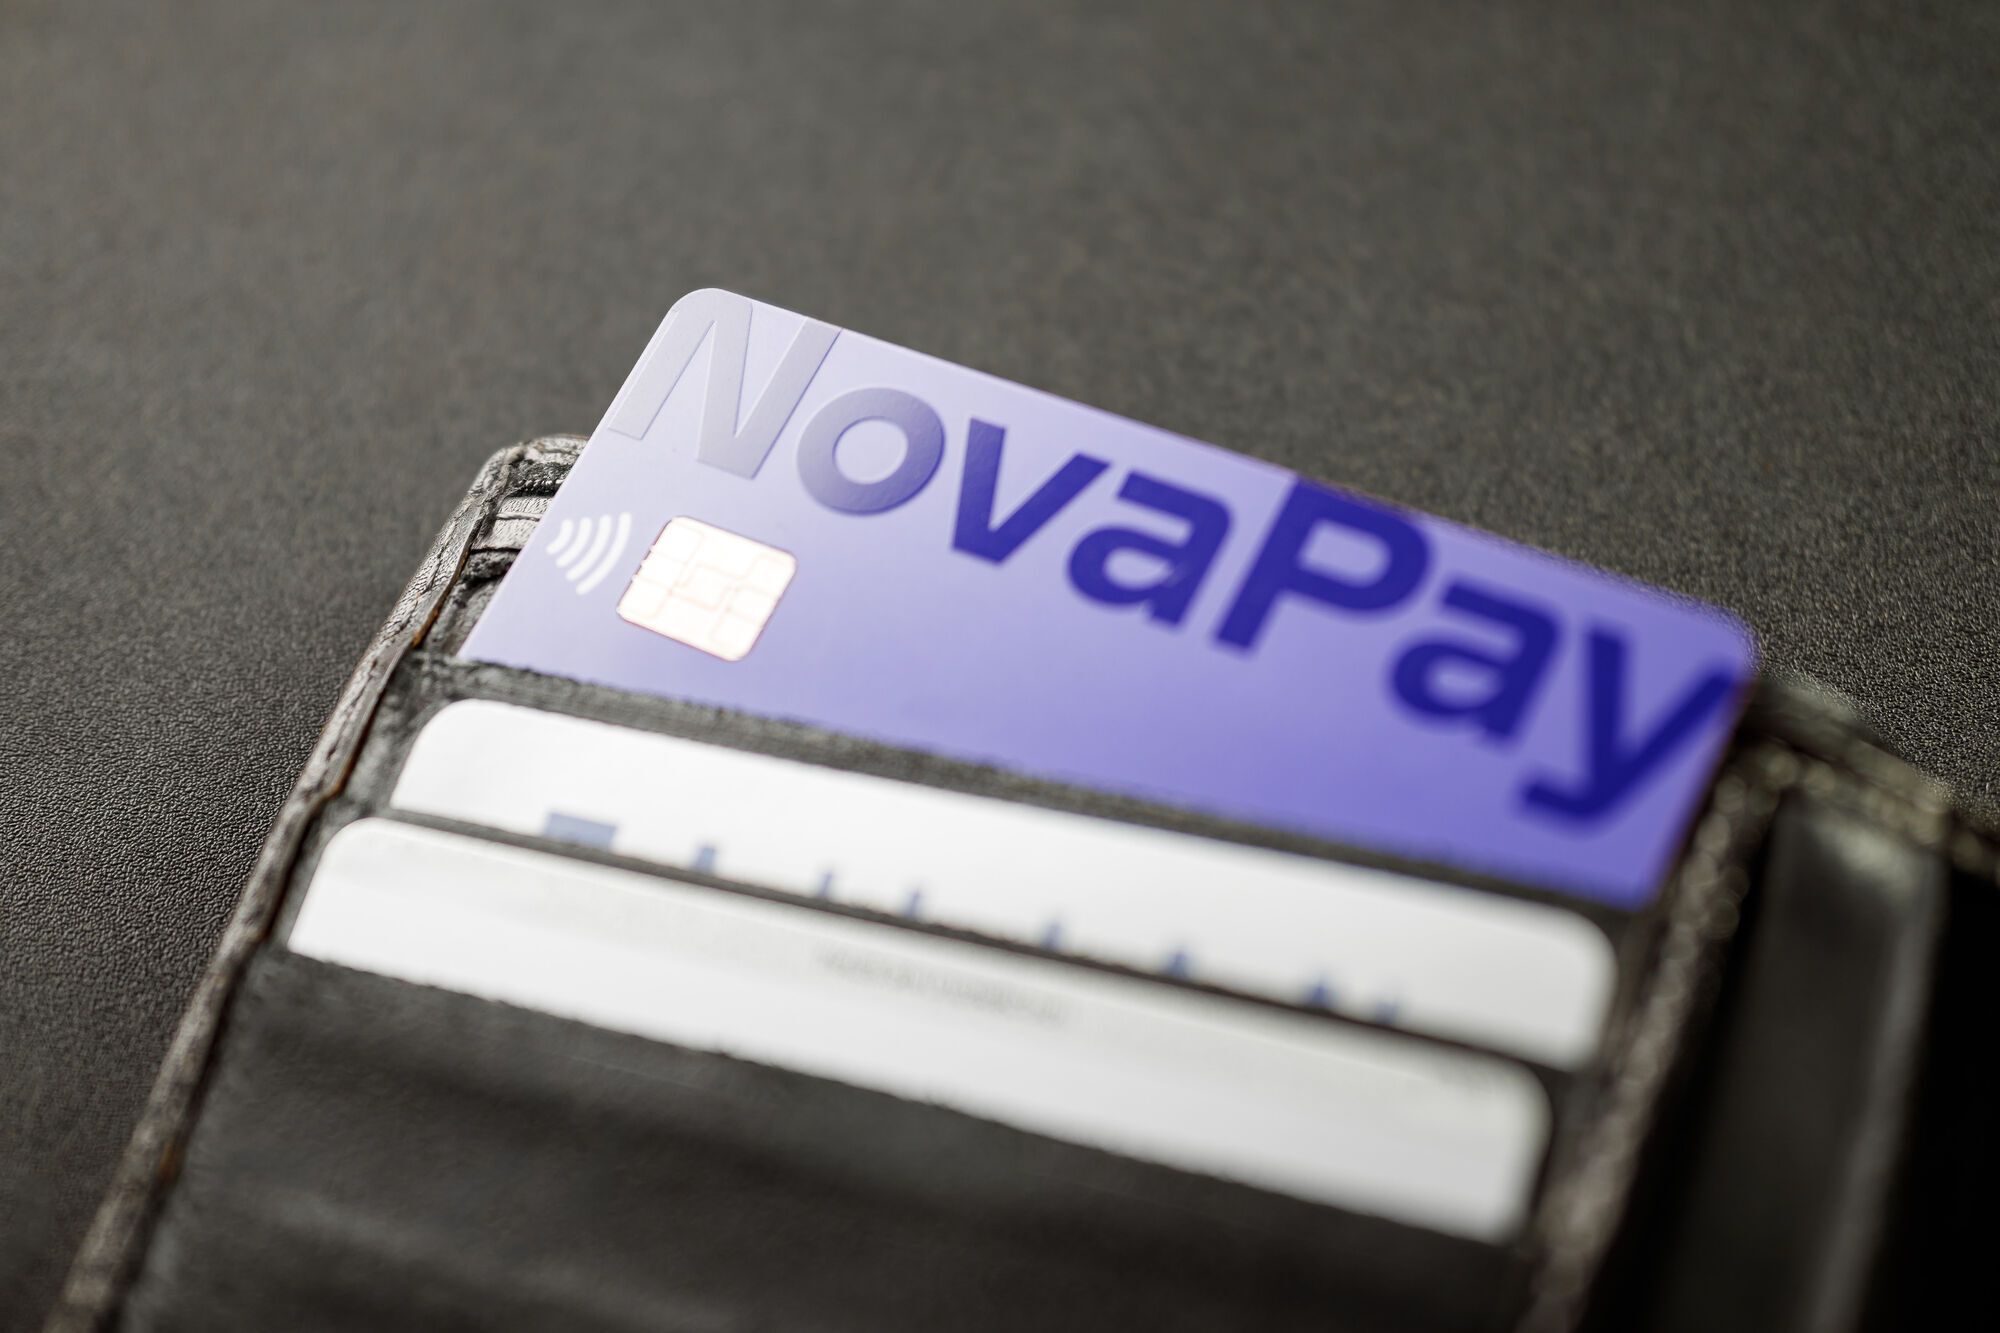 От денежных переводов до скидок на почте: тест-драйв приложения NovaPay